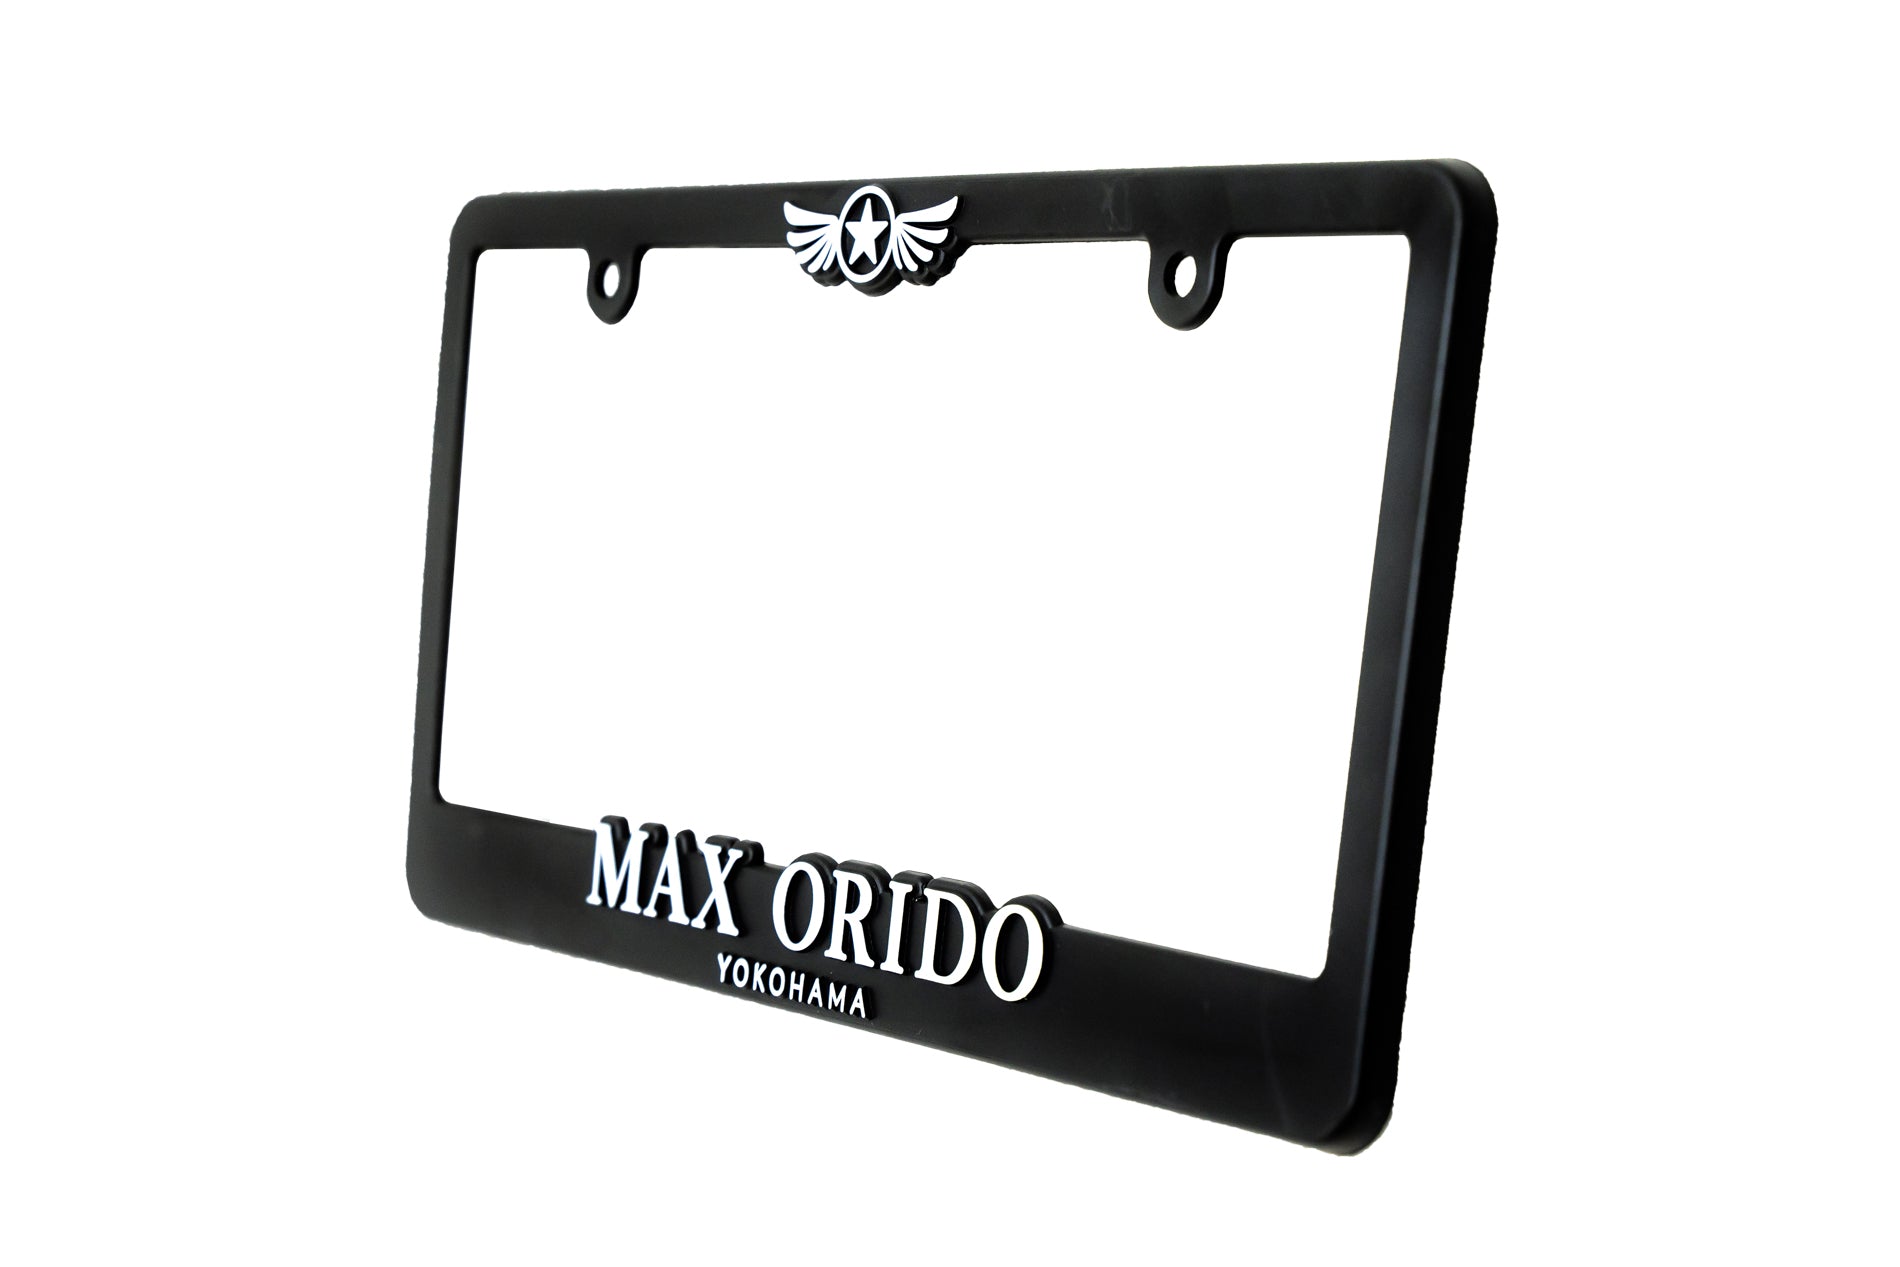 MAX ORIDO - License Plate Frame